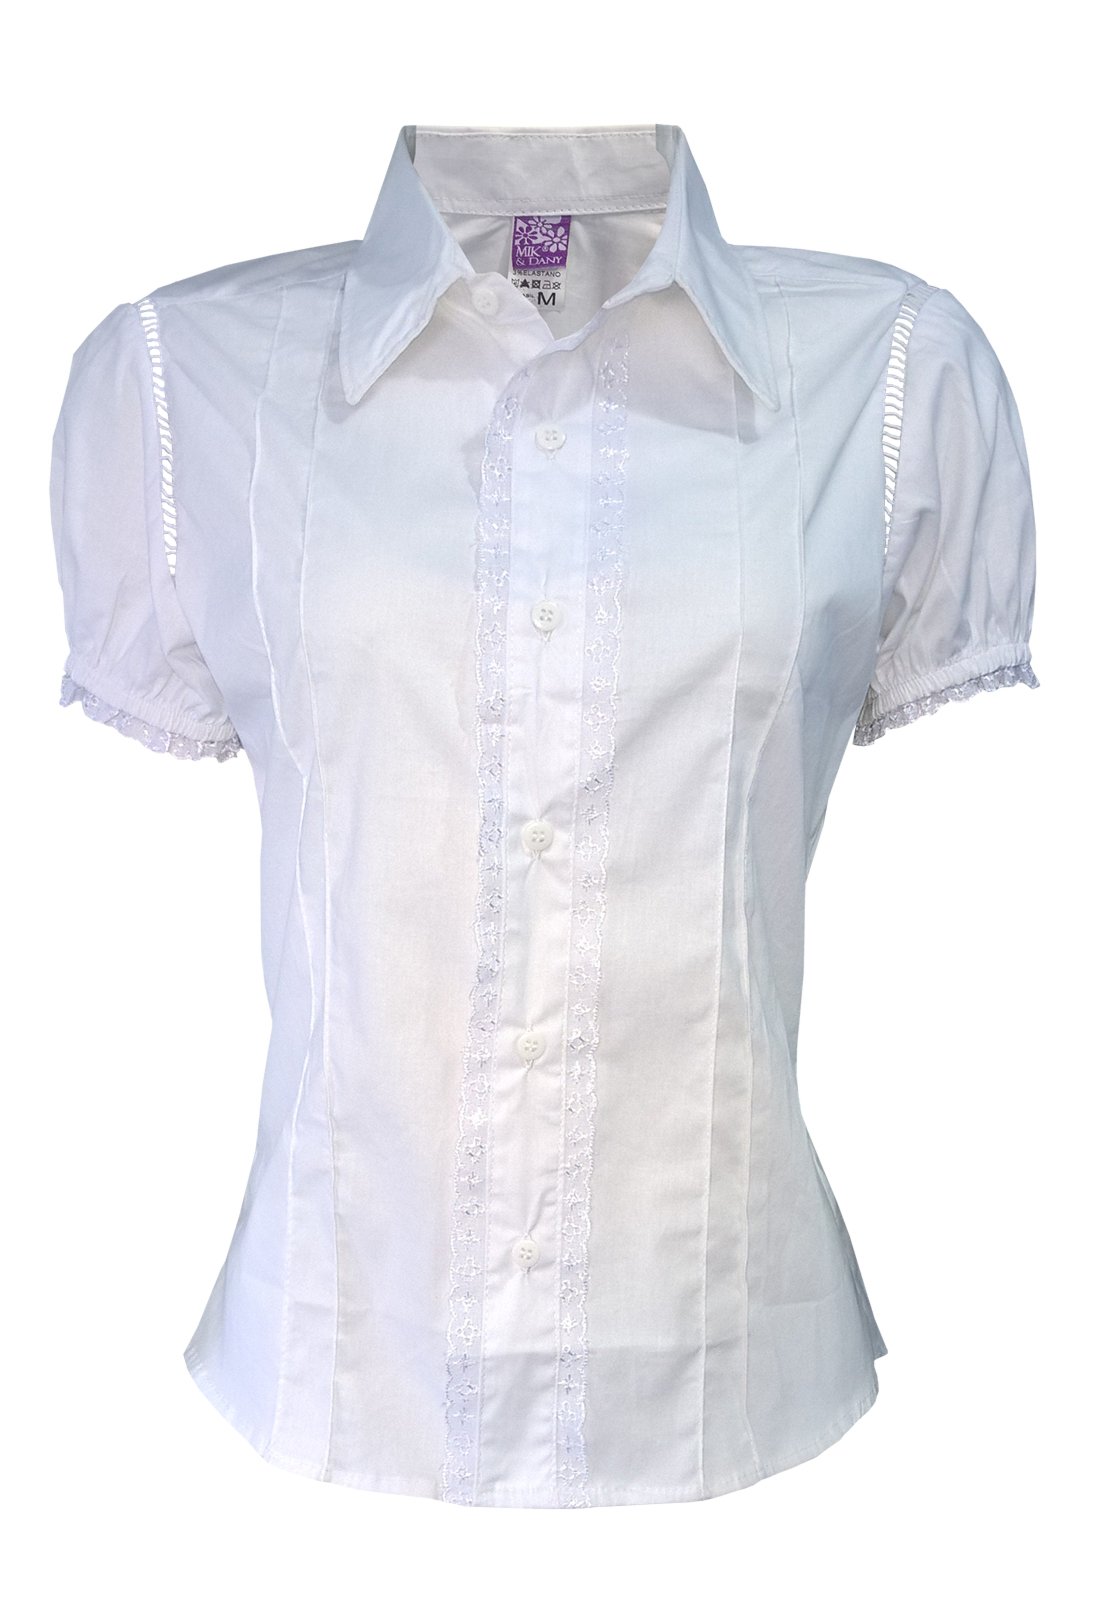 camisa social feminina branca manga curta